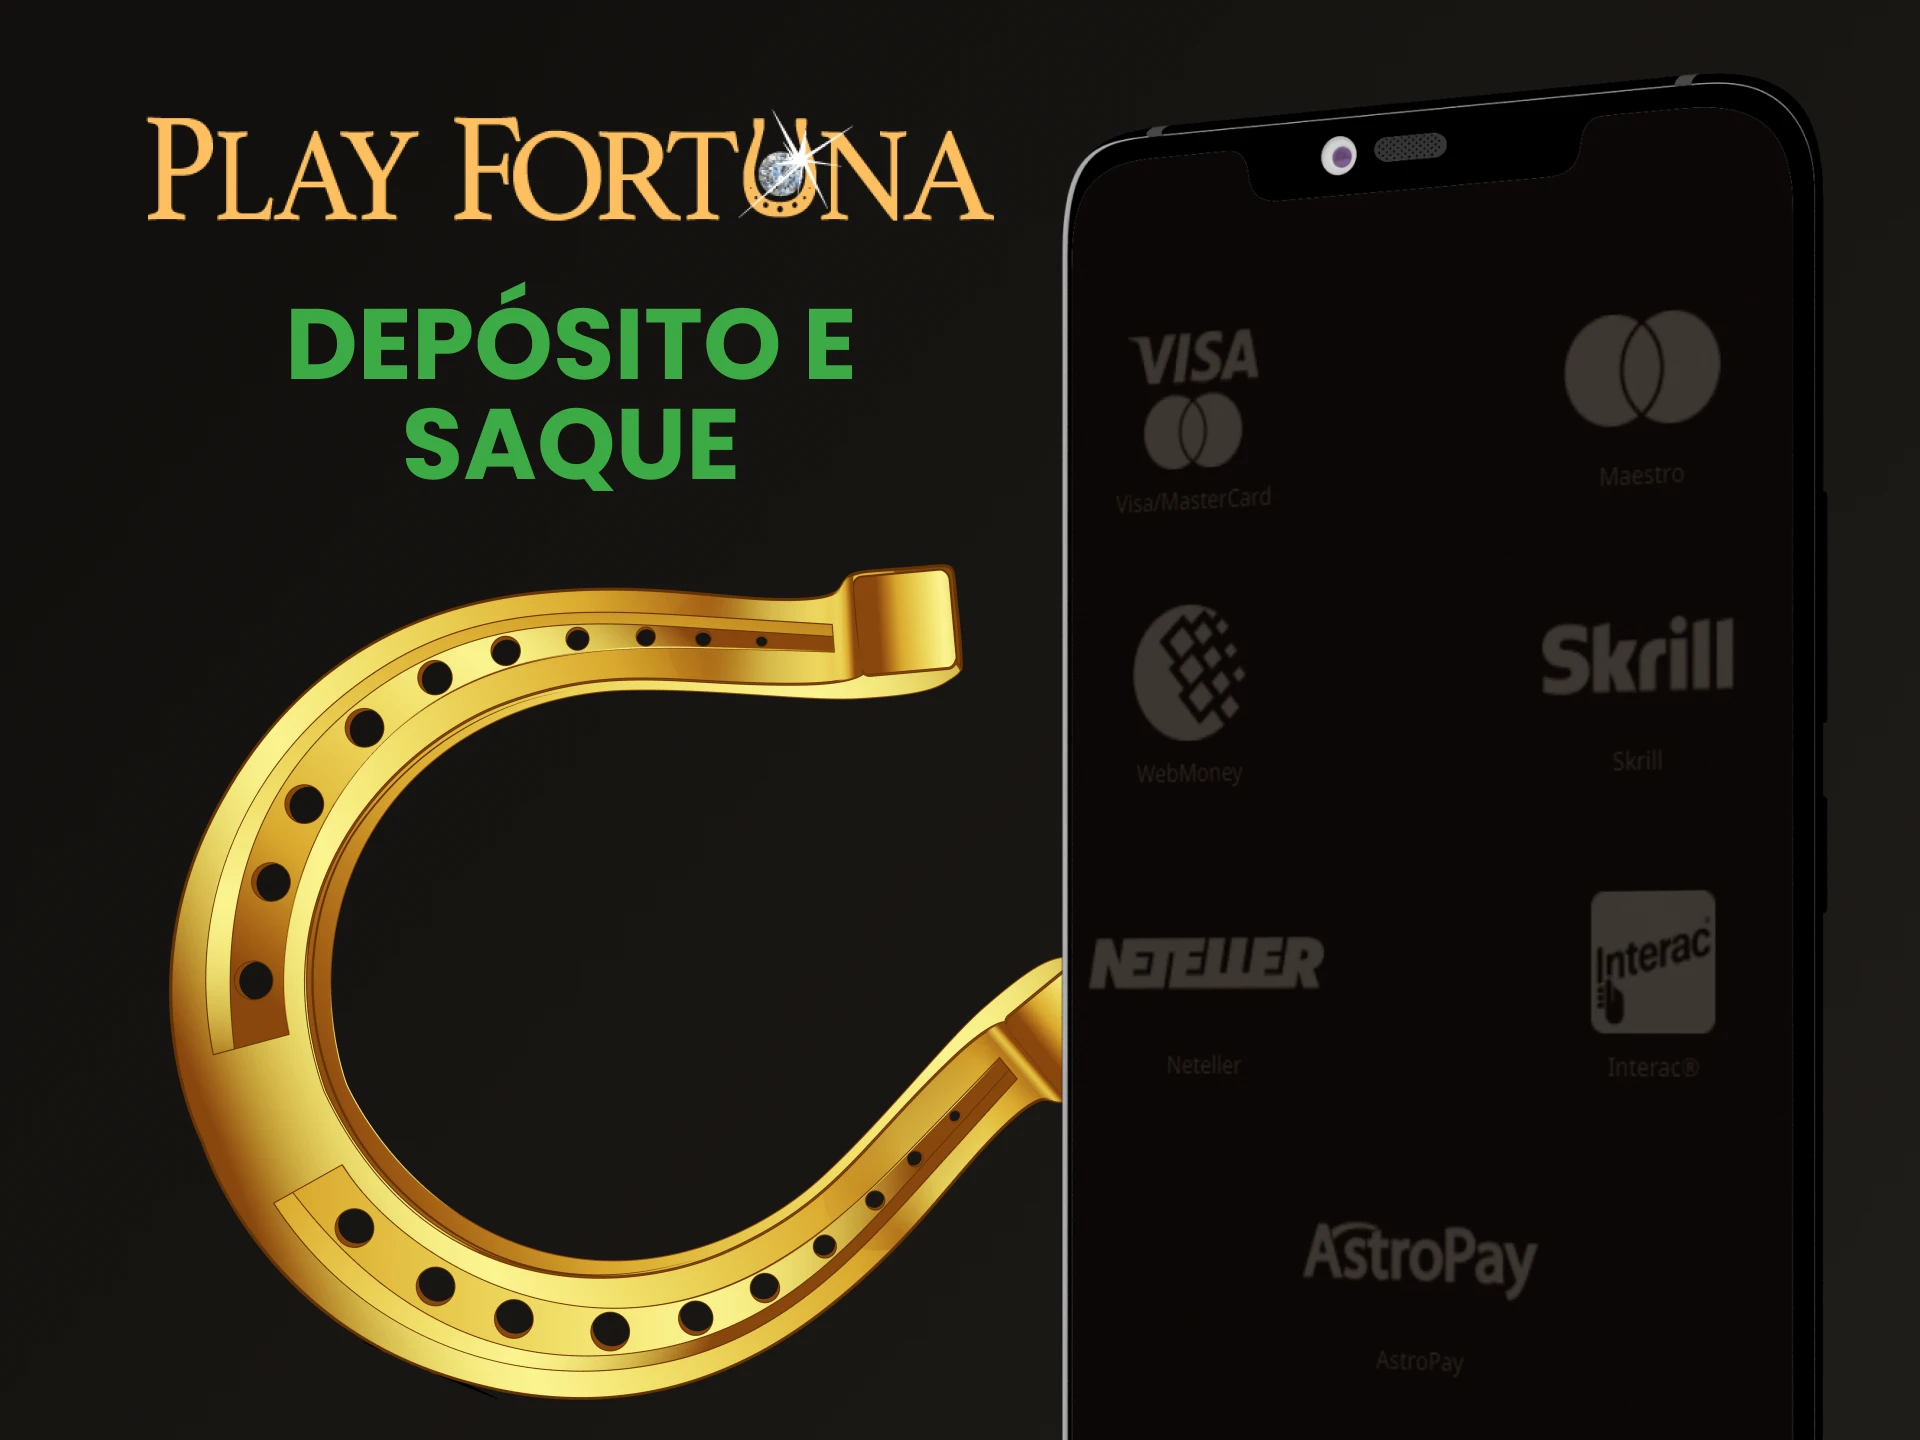 Diremos quais métodos de transação estão disponíveis no aplicativo Play Fortuna.